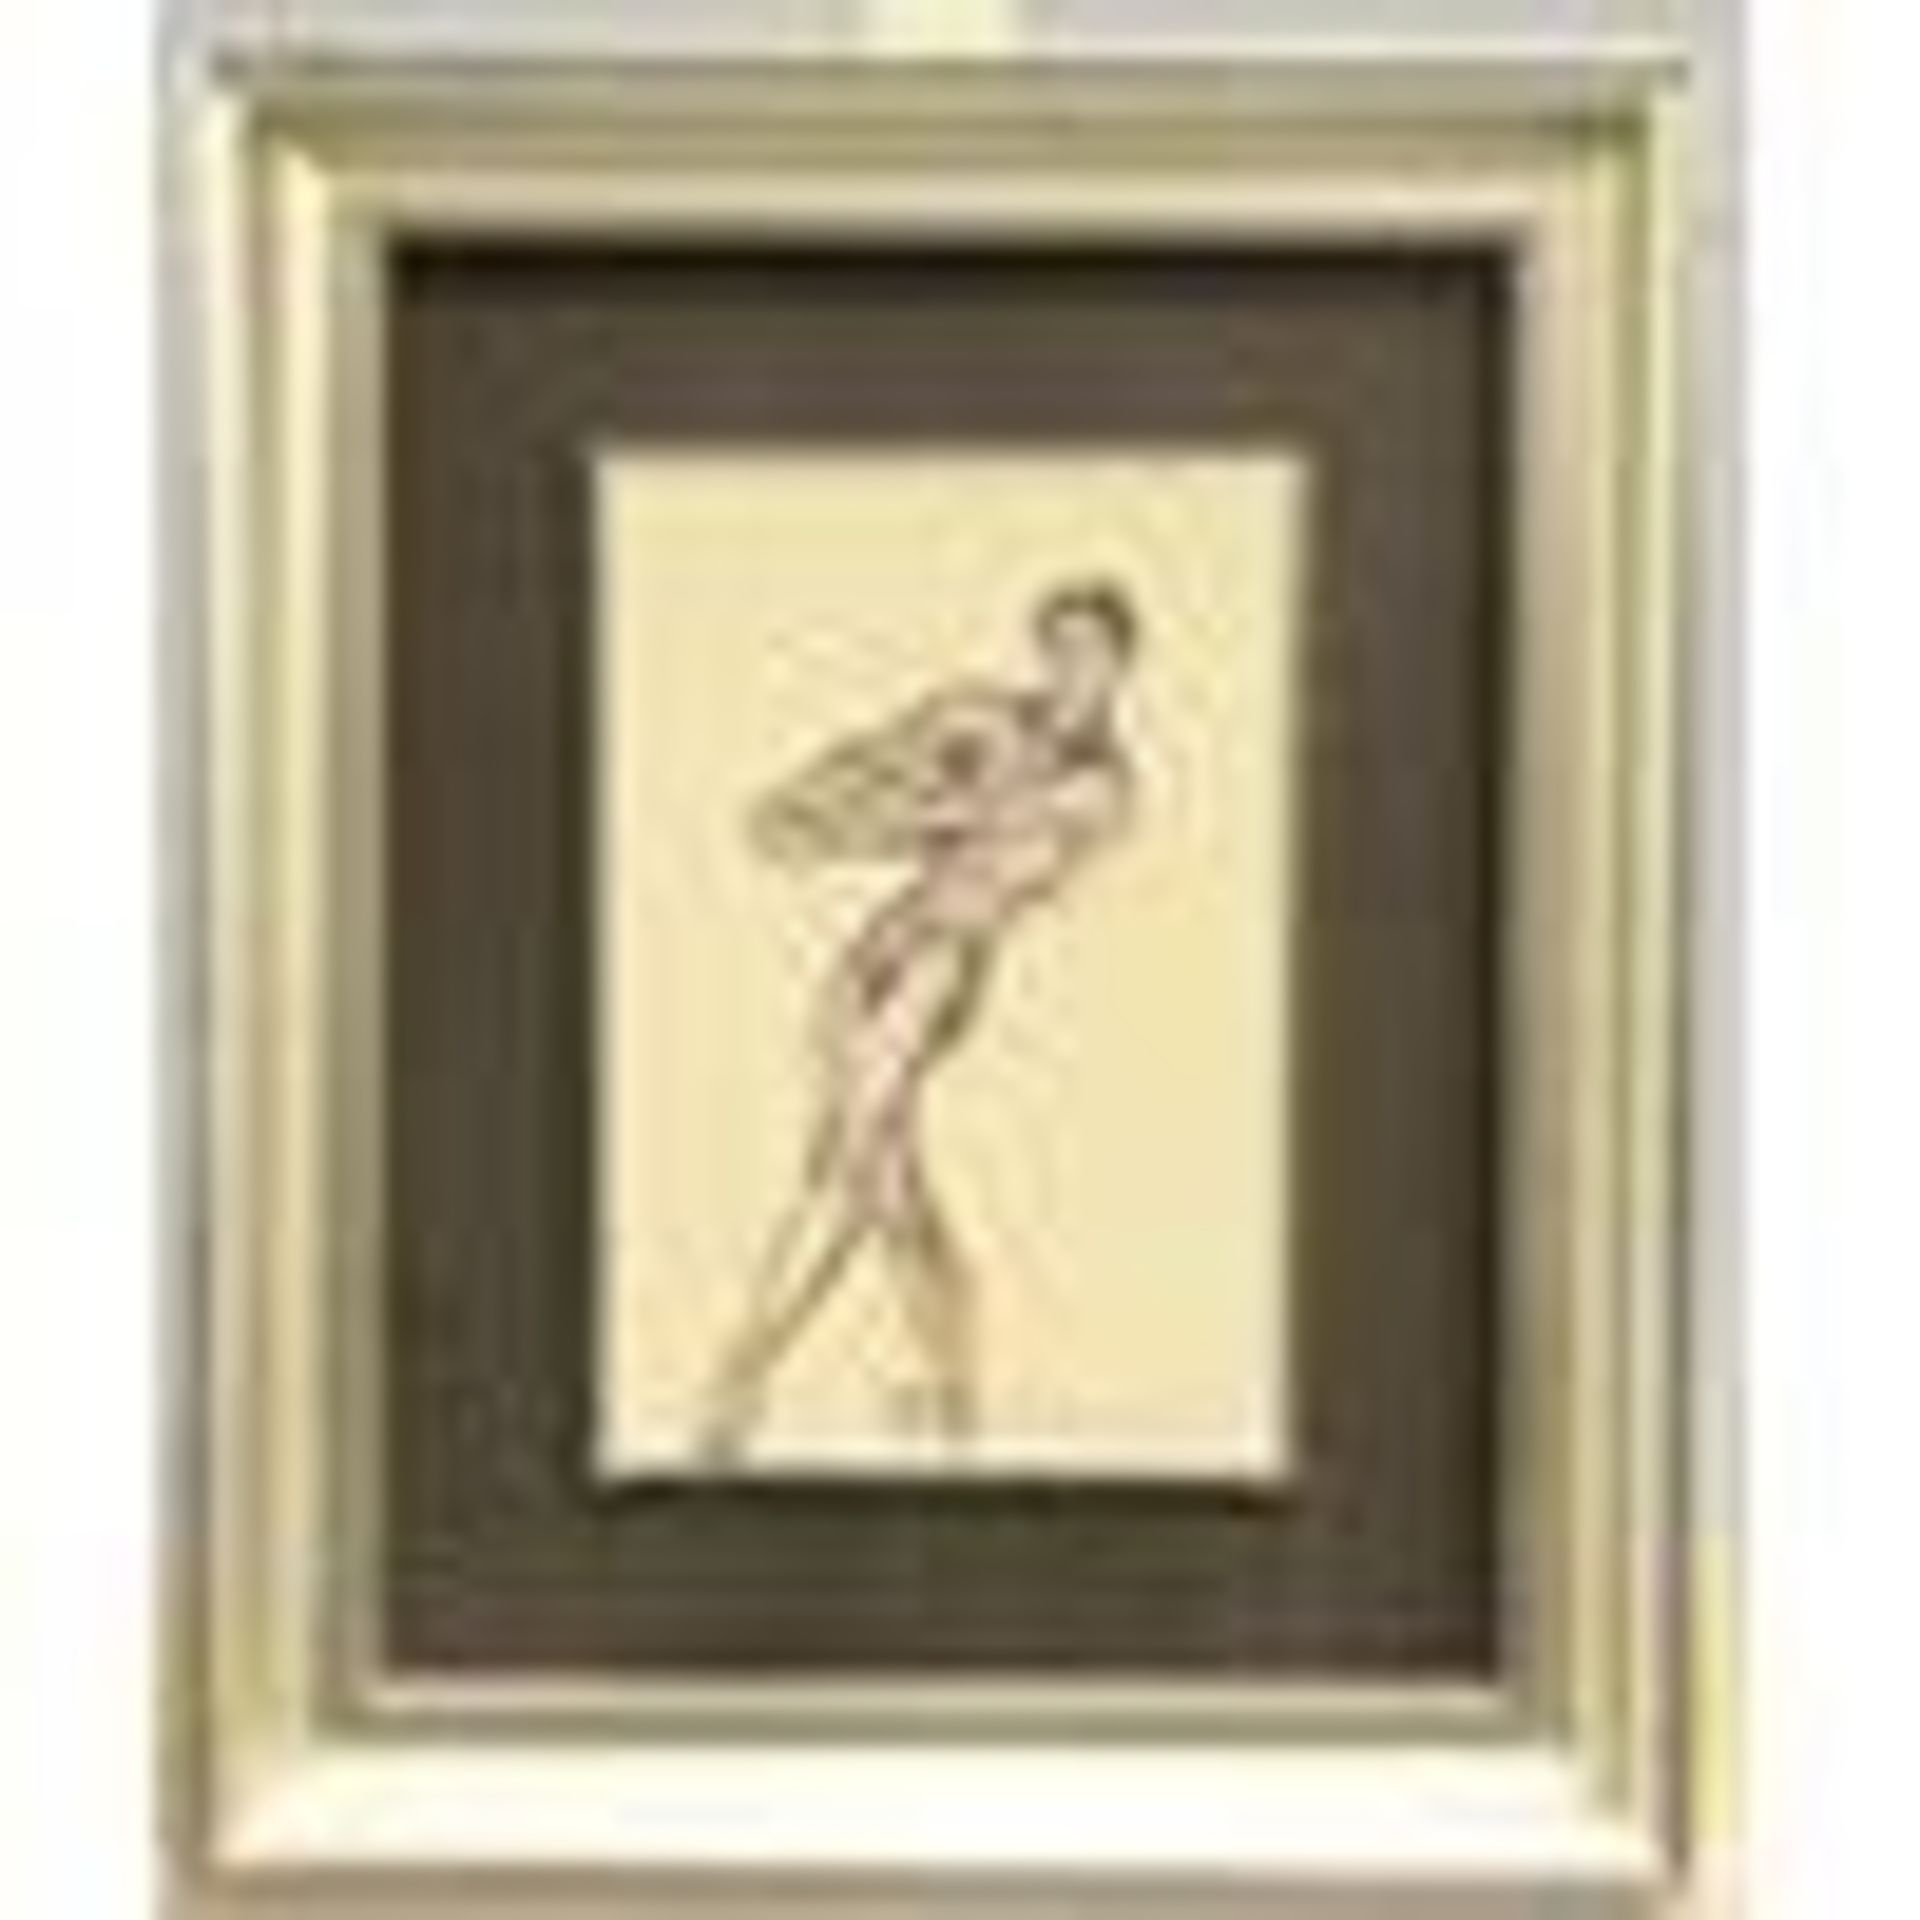 TOM MERRIFIELD (BORN 1932), MALE BALLET DANCER - Image 2 of 2